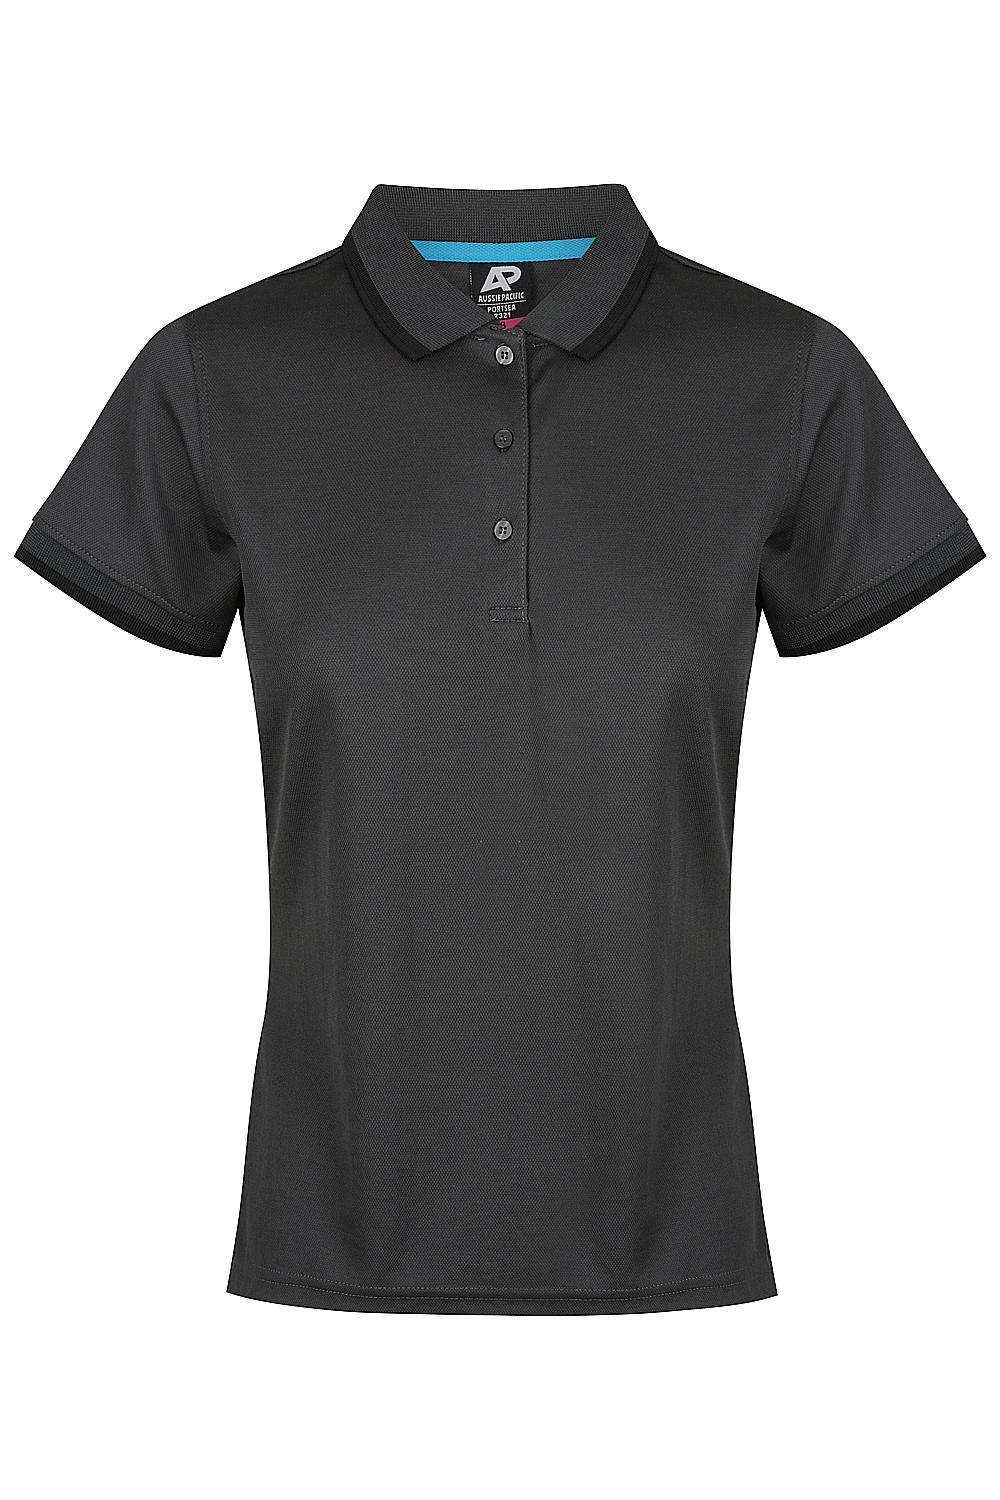 Custom Ladies Portsea Work Shirts - Slate/Black